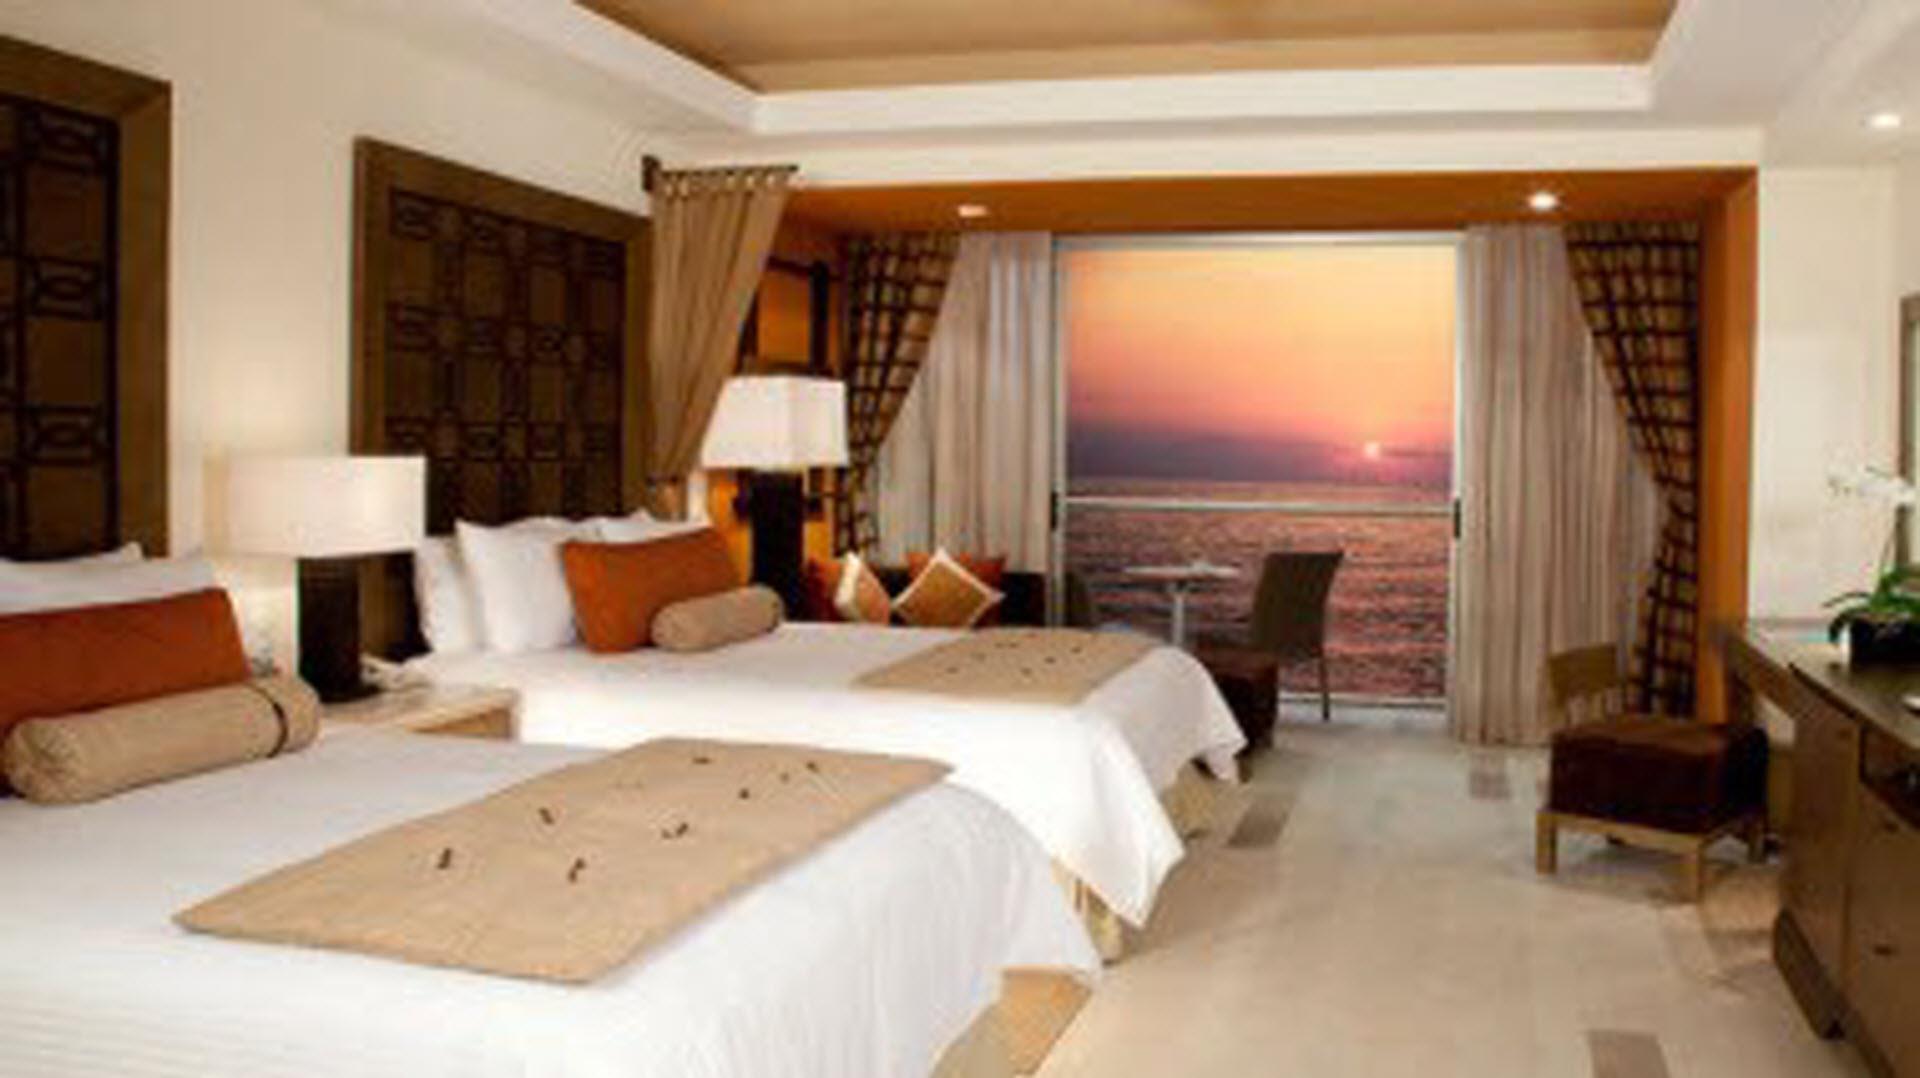 Dreams Vallarta Bay Resort & Spa in Puerto Vallarta, MX